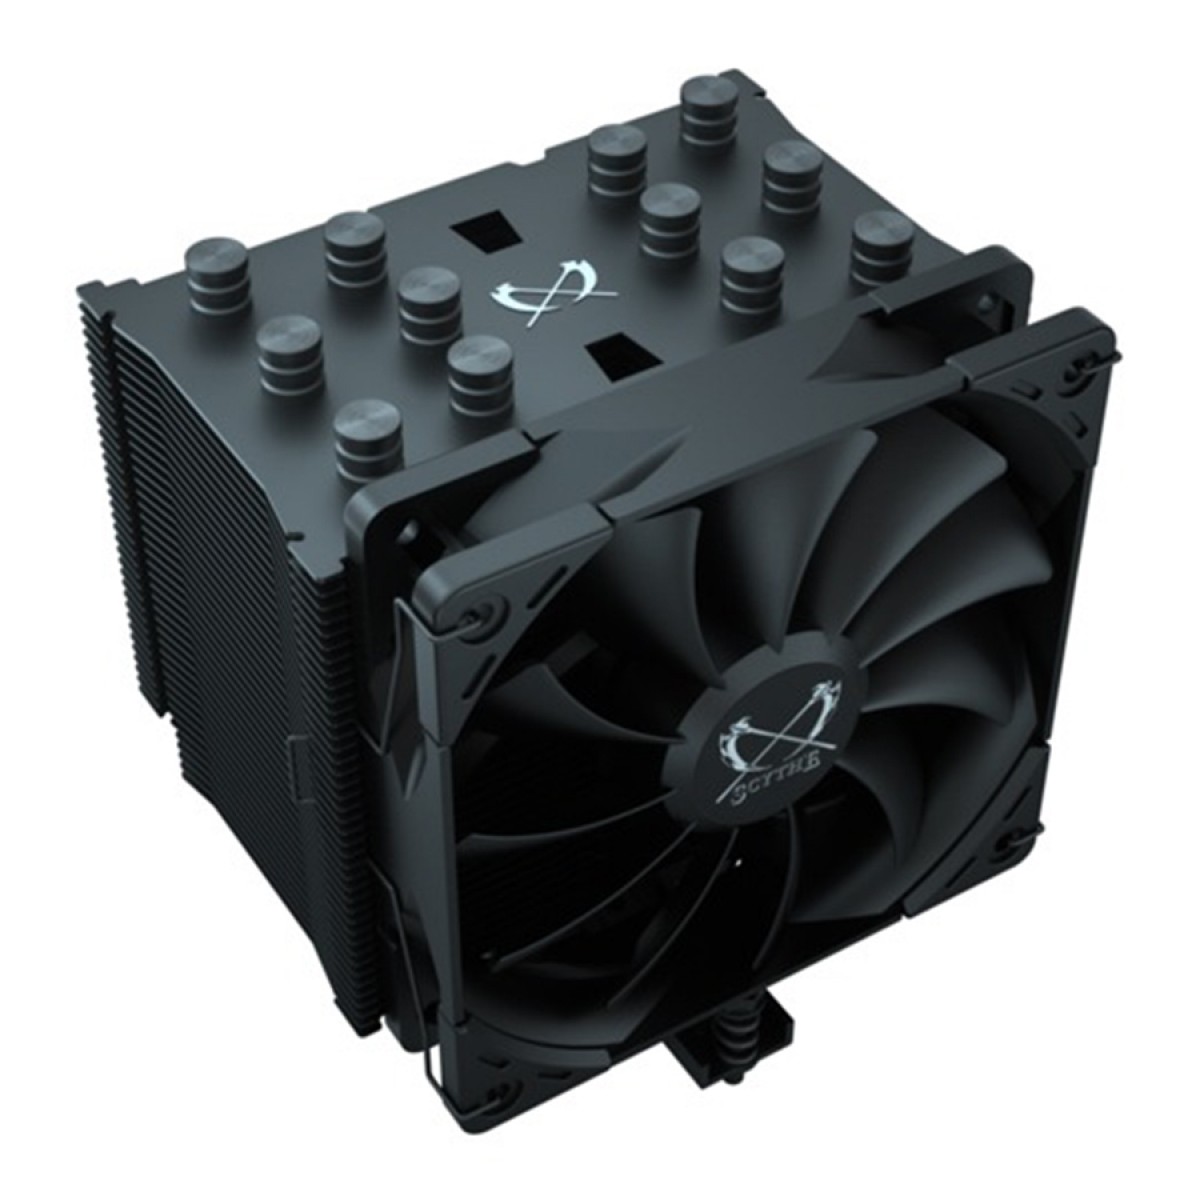 Cooler para Processador Scythe Mugen 5 Black Edition, 120mm, Intel-AMD, SCMG-5100BE